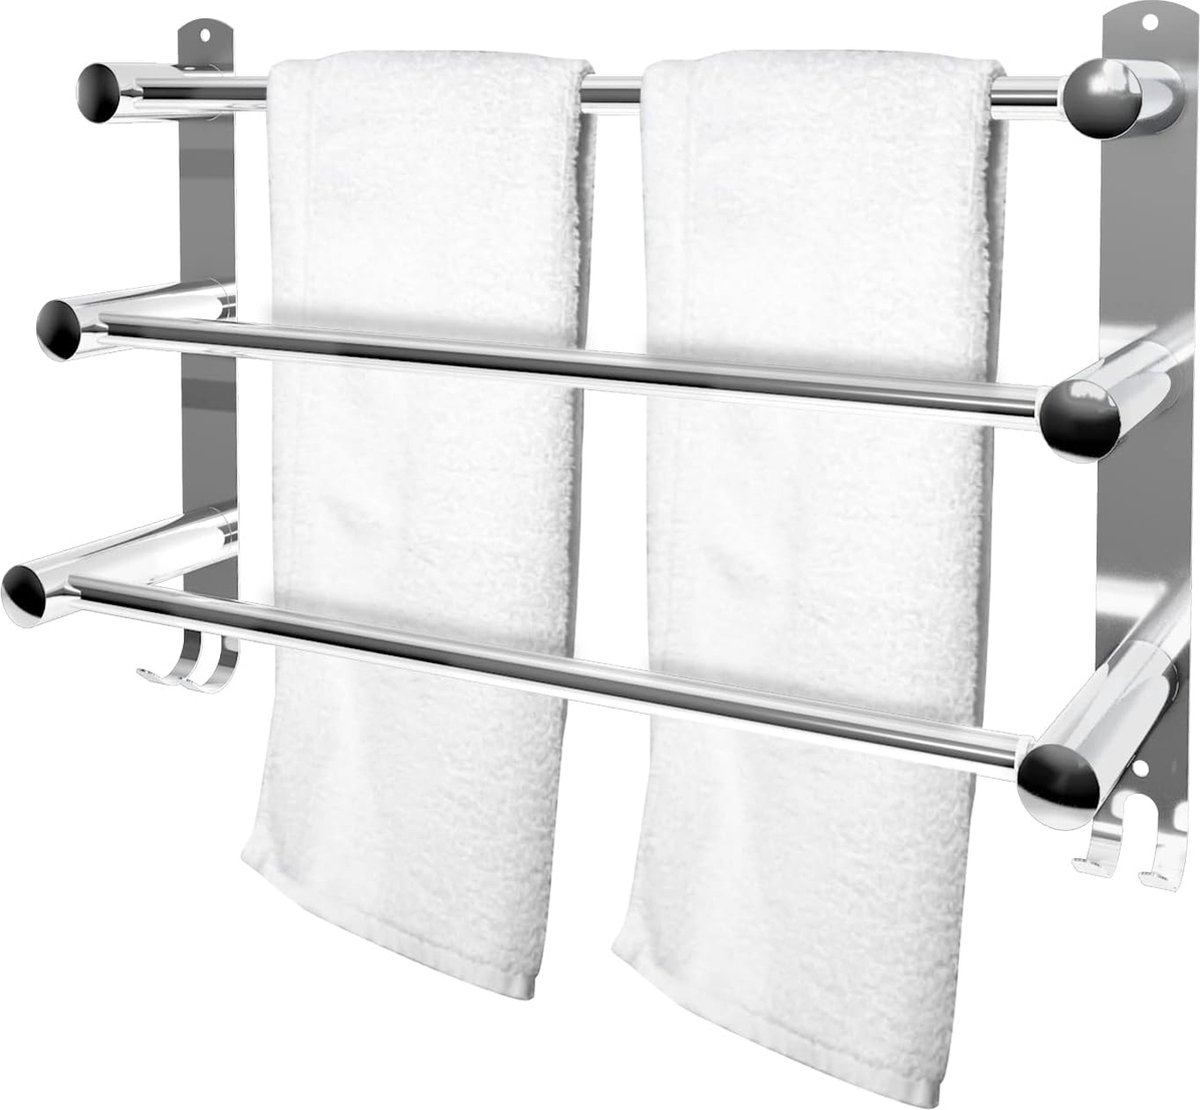 Handdoekhouder, 3 stangen, 49 - 90 cm, wandmontage, met haken, roestvrij staal, verstelbare handdoekhouder, voor keuken, toilet, chroom